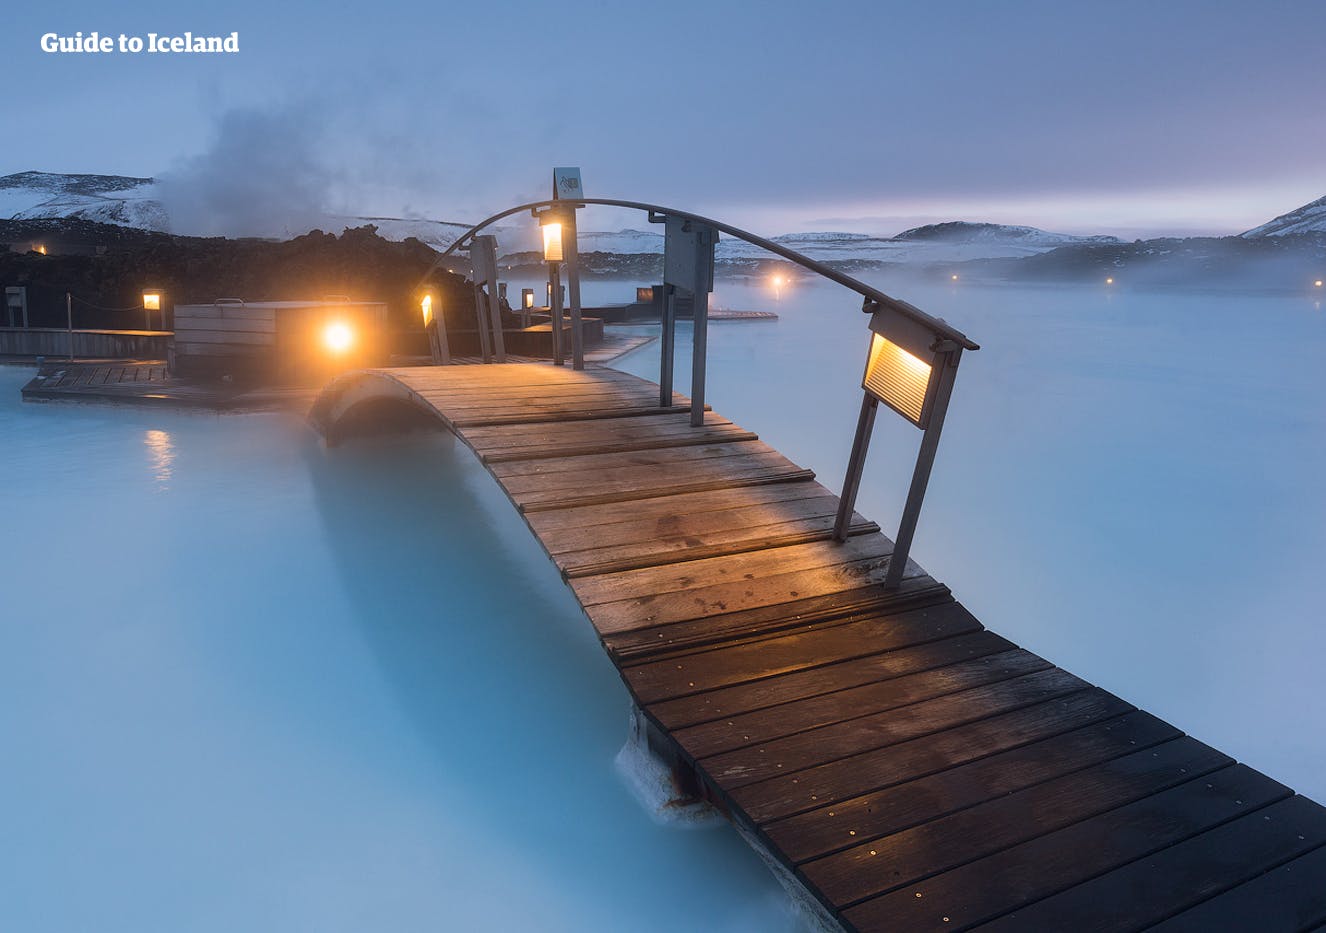 Najstarsza latarnia morska na Islandii znajduje się na półwyspie Reykjanes i nazywa się Reykjanesvíti.